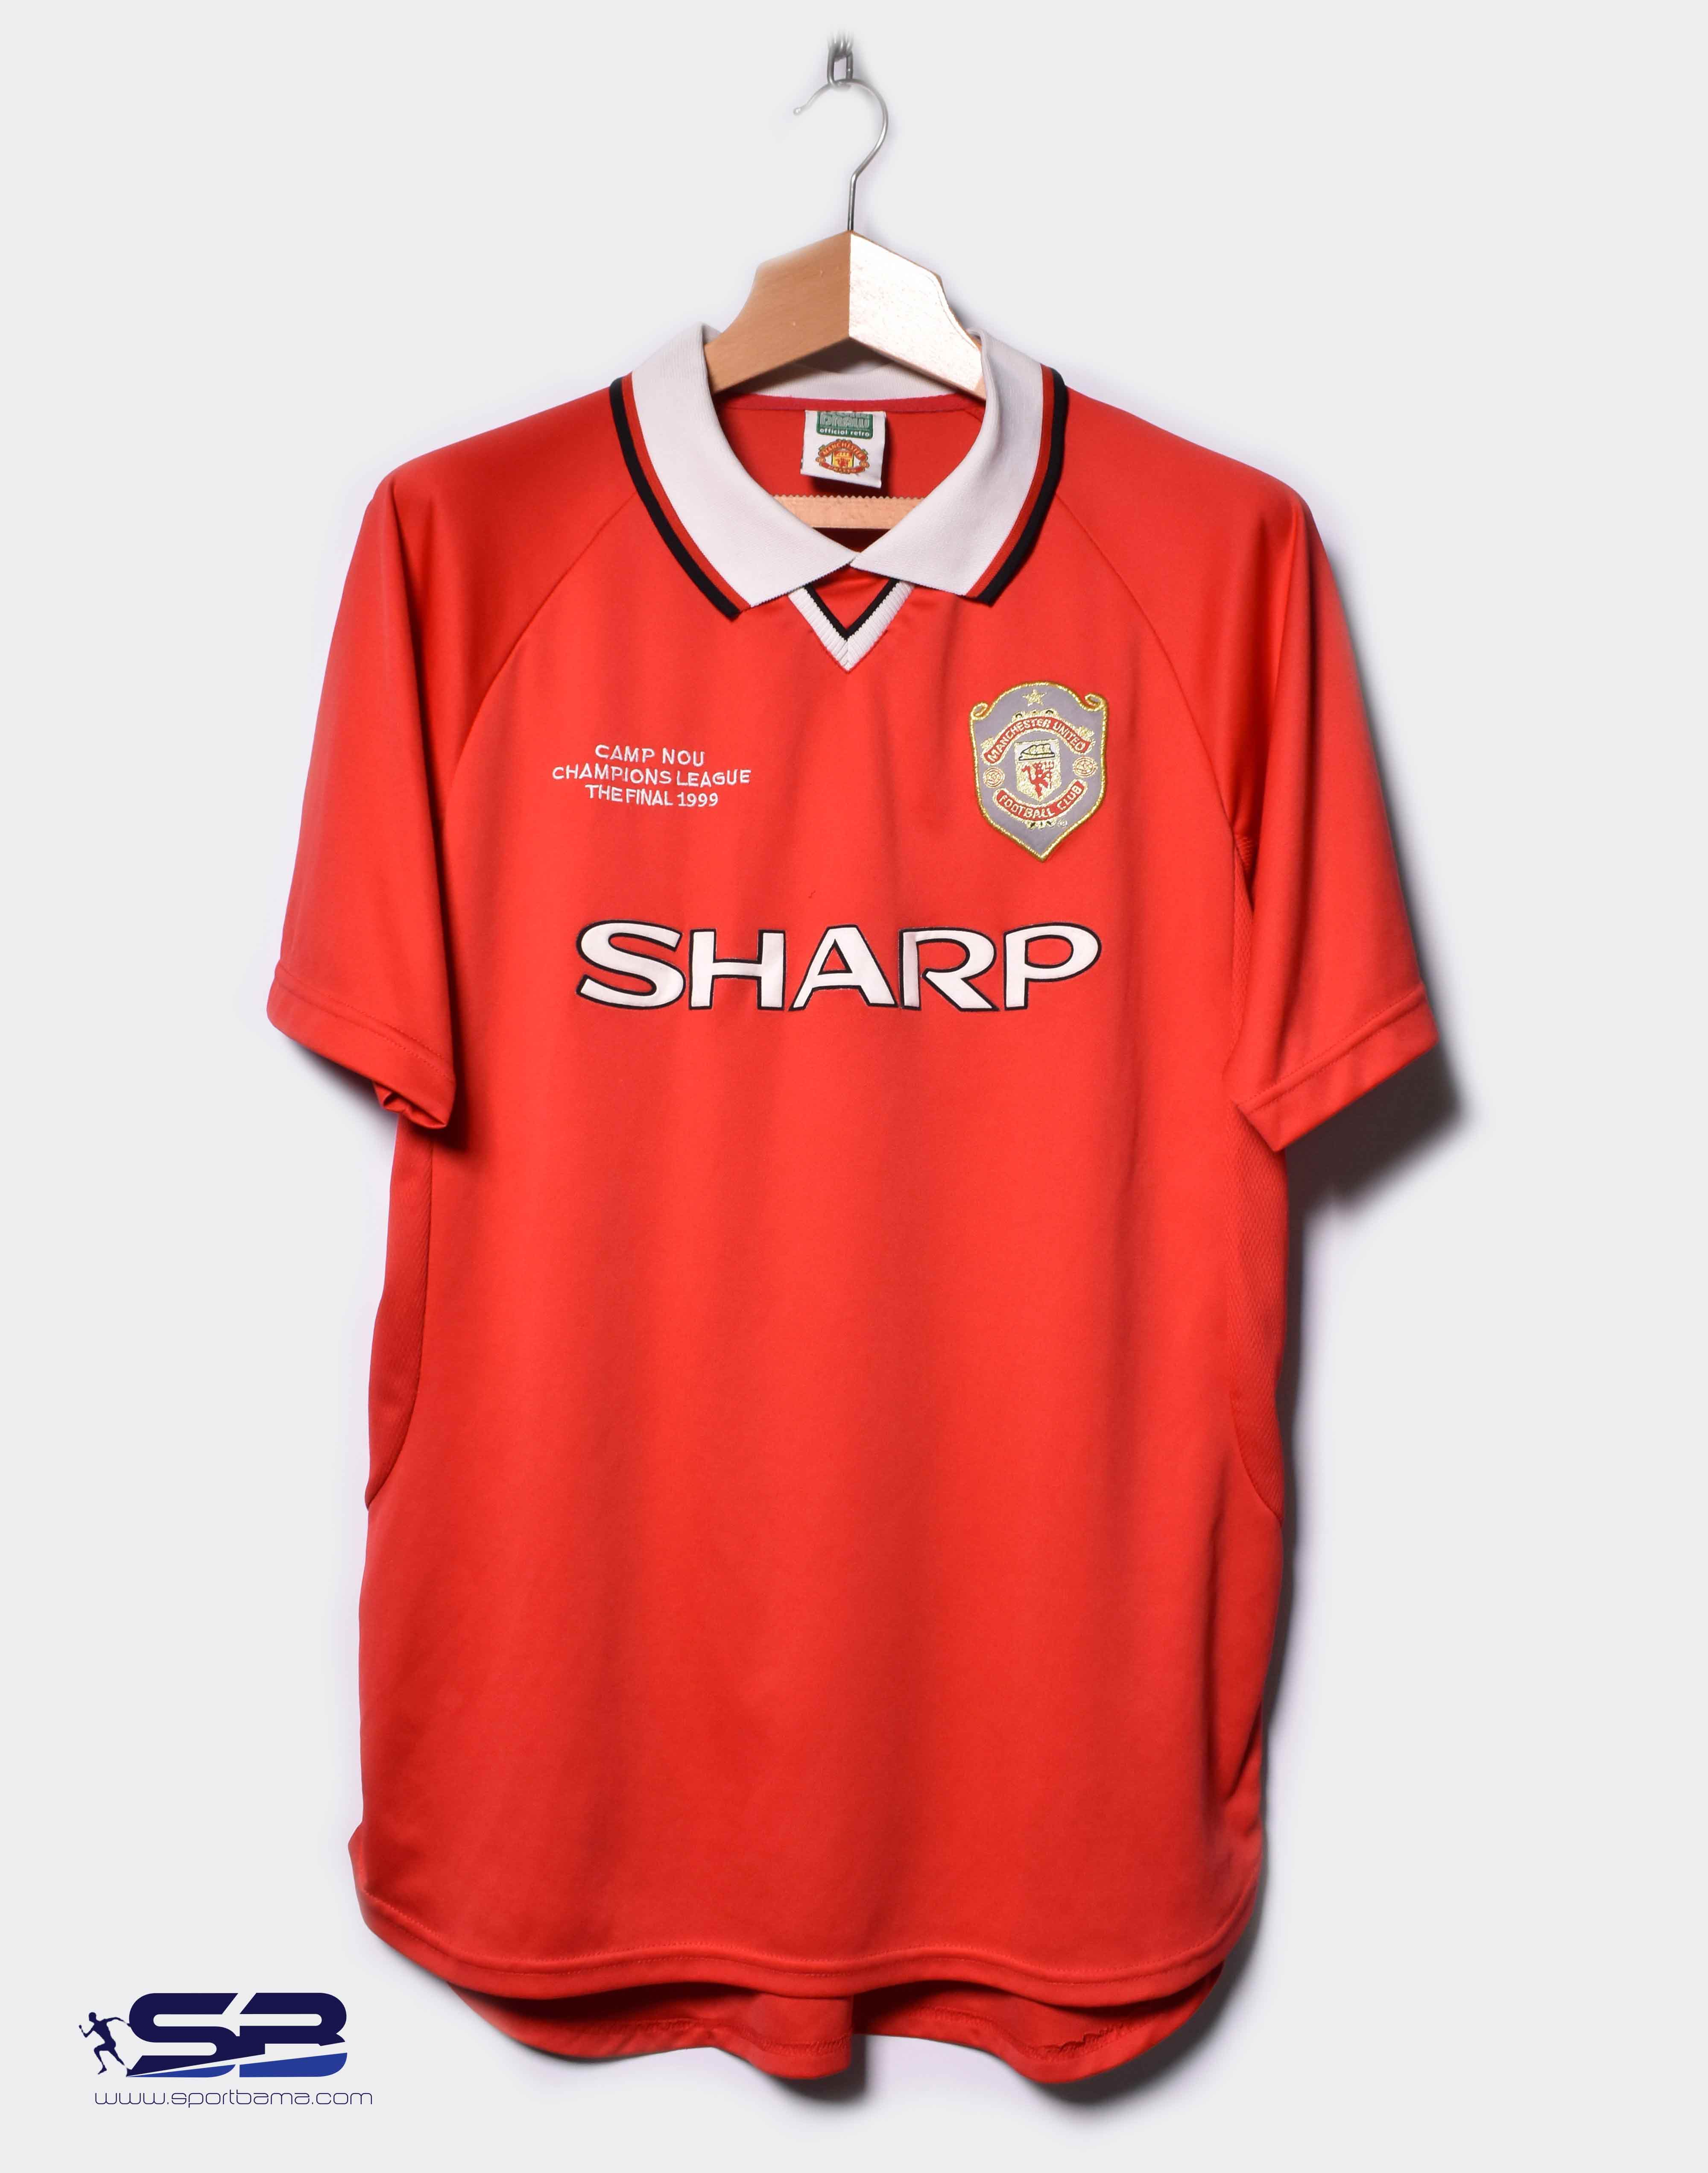  خرید  پیراهن آستین کوتاه نوستالژی منچستر یونایتد فصل 1999 رنگ قرمز - کیت اول